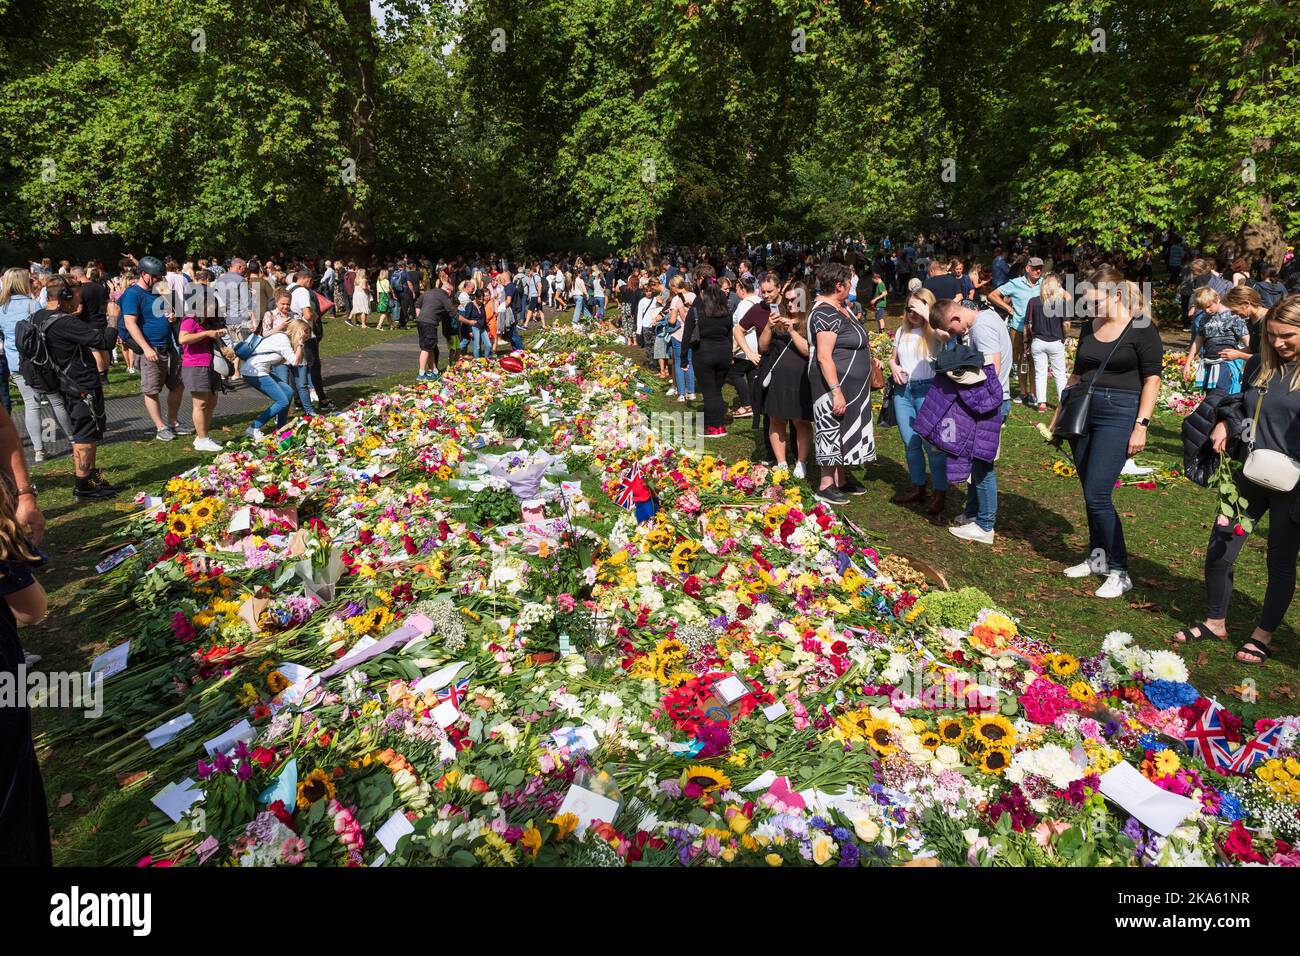 Personnes observant les hommages floraux à Green Park, laissé par les amateurs de tourniquets pour marquer la mort de la reine Elizabeth II. Green Park, Londres, Royaume-Uni. 11 septembre 2022 Banque D'Images